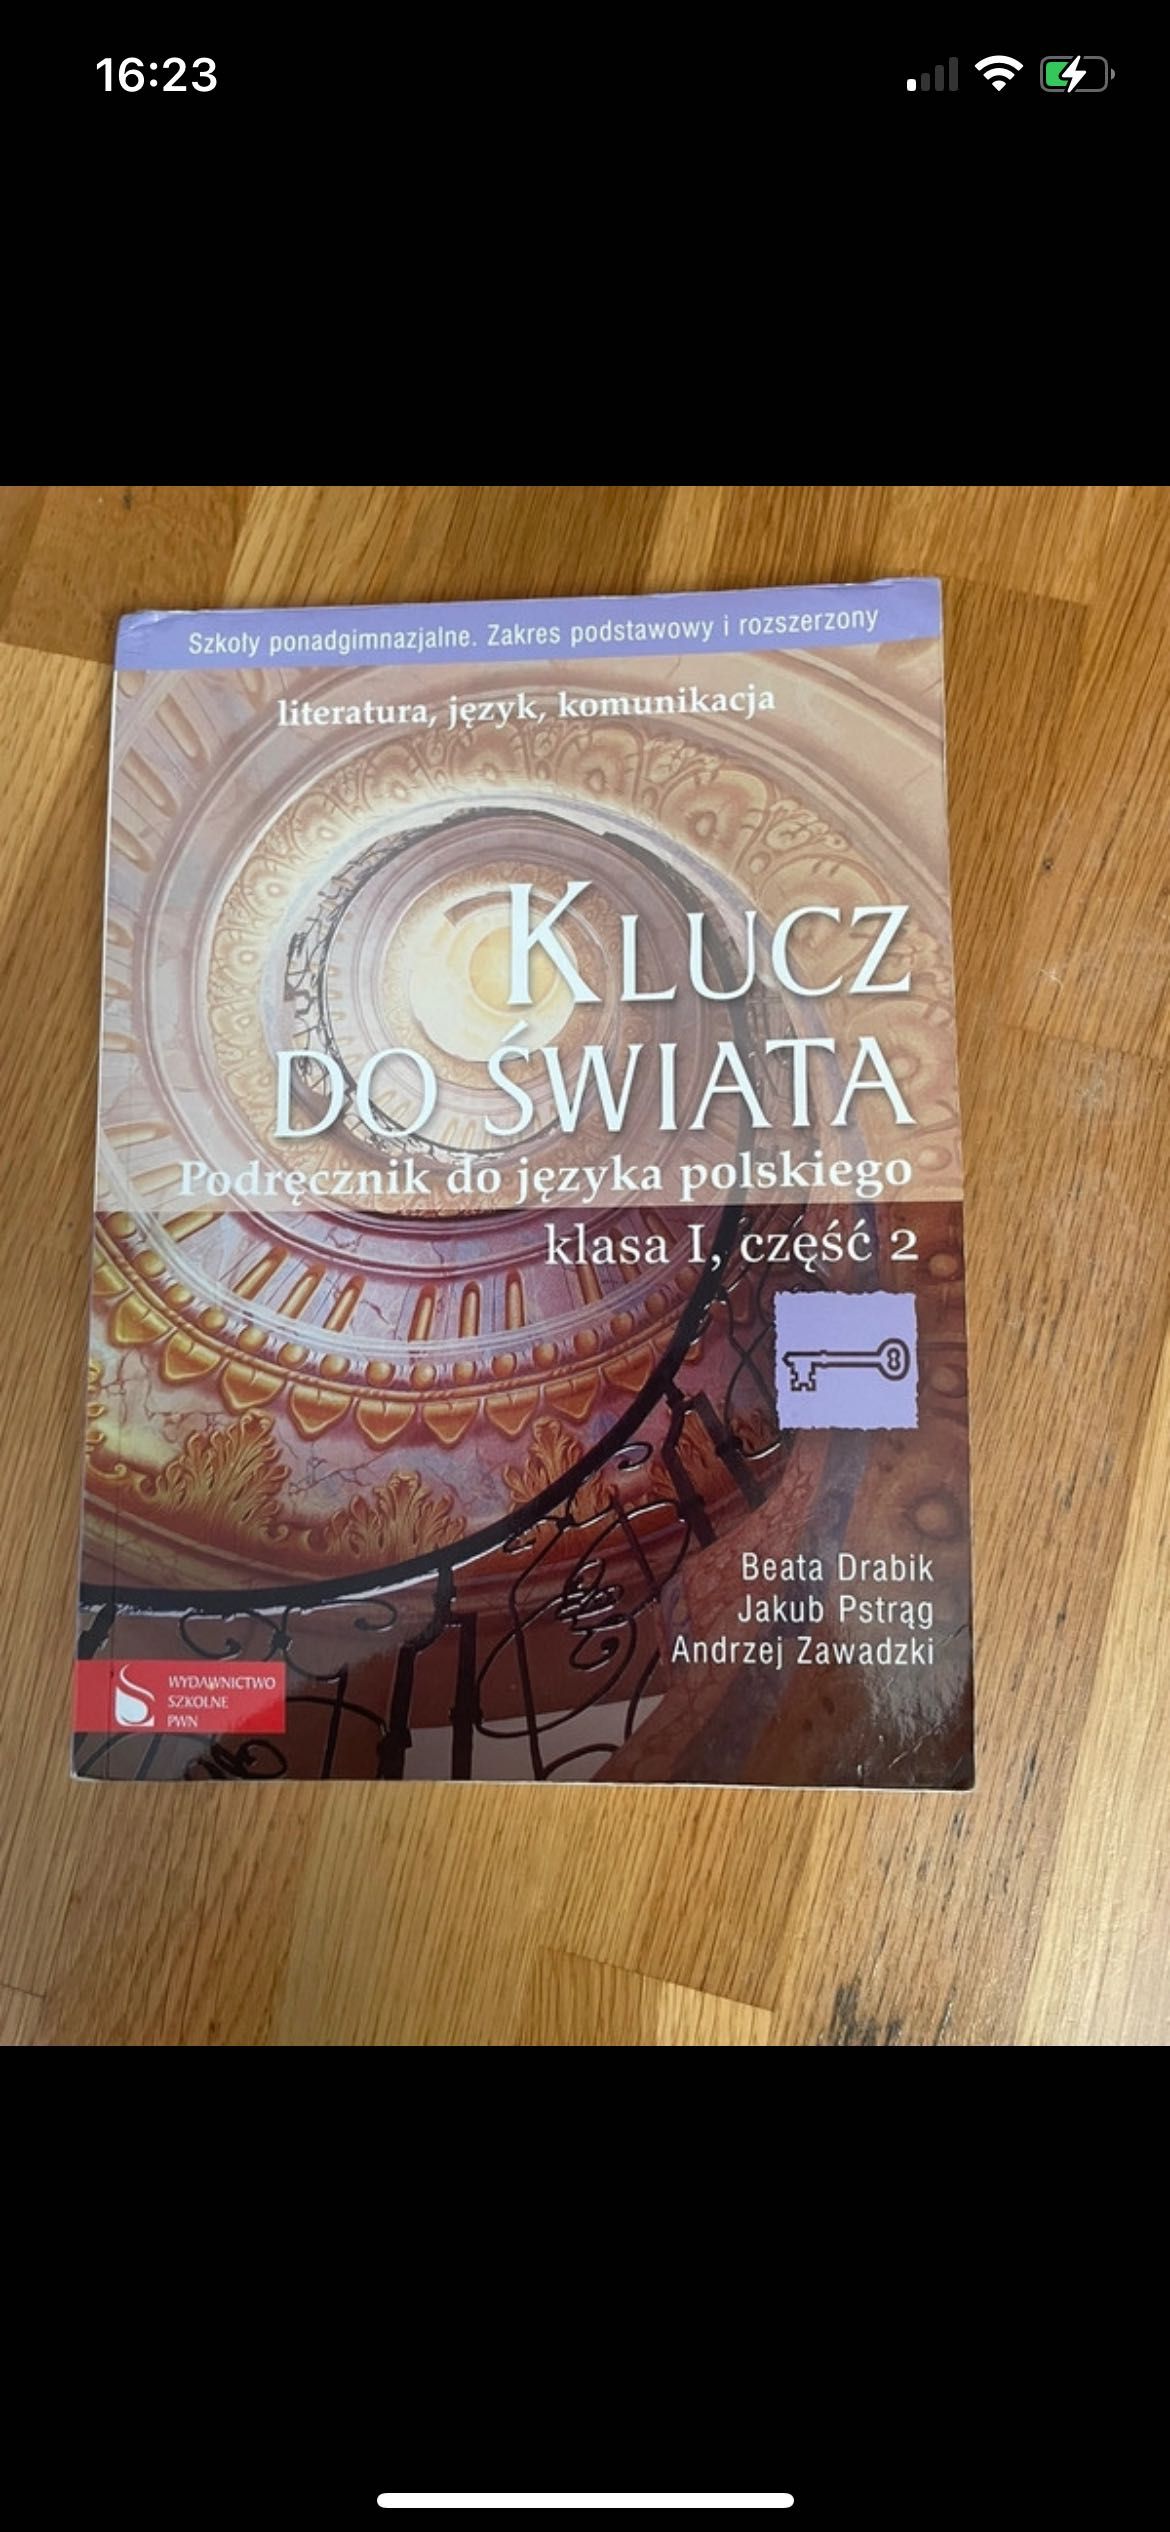 Klucz do świata podręcznik do języka polskiego kl. 1 cz. 2